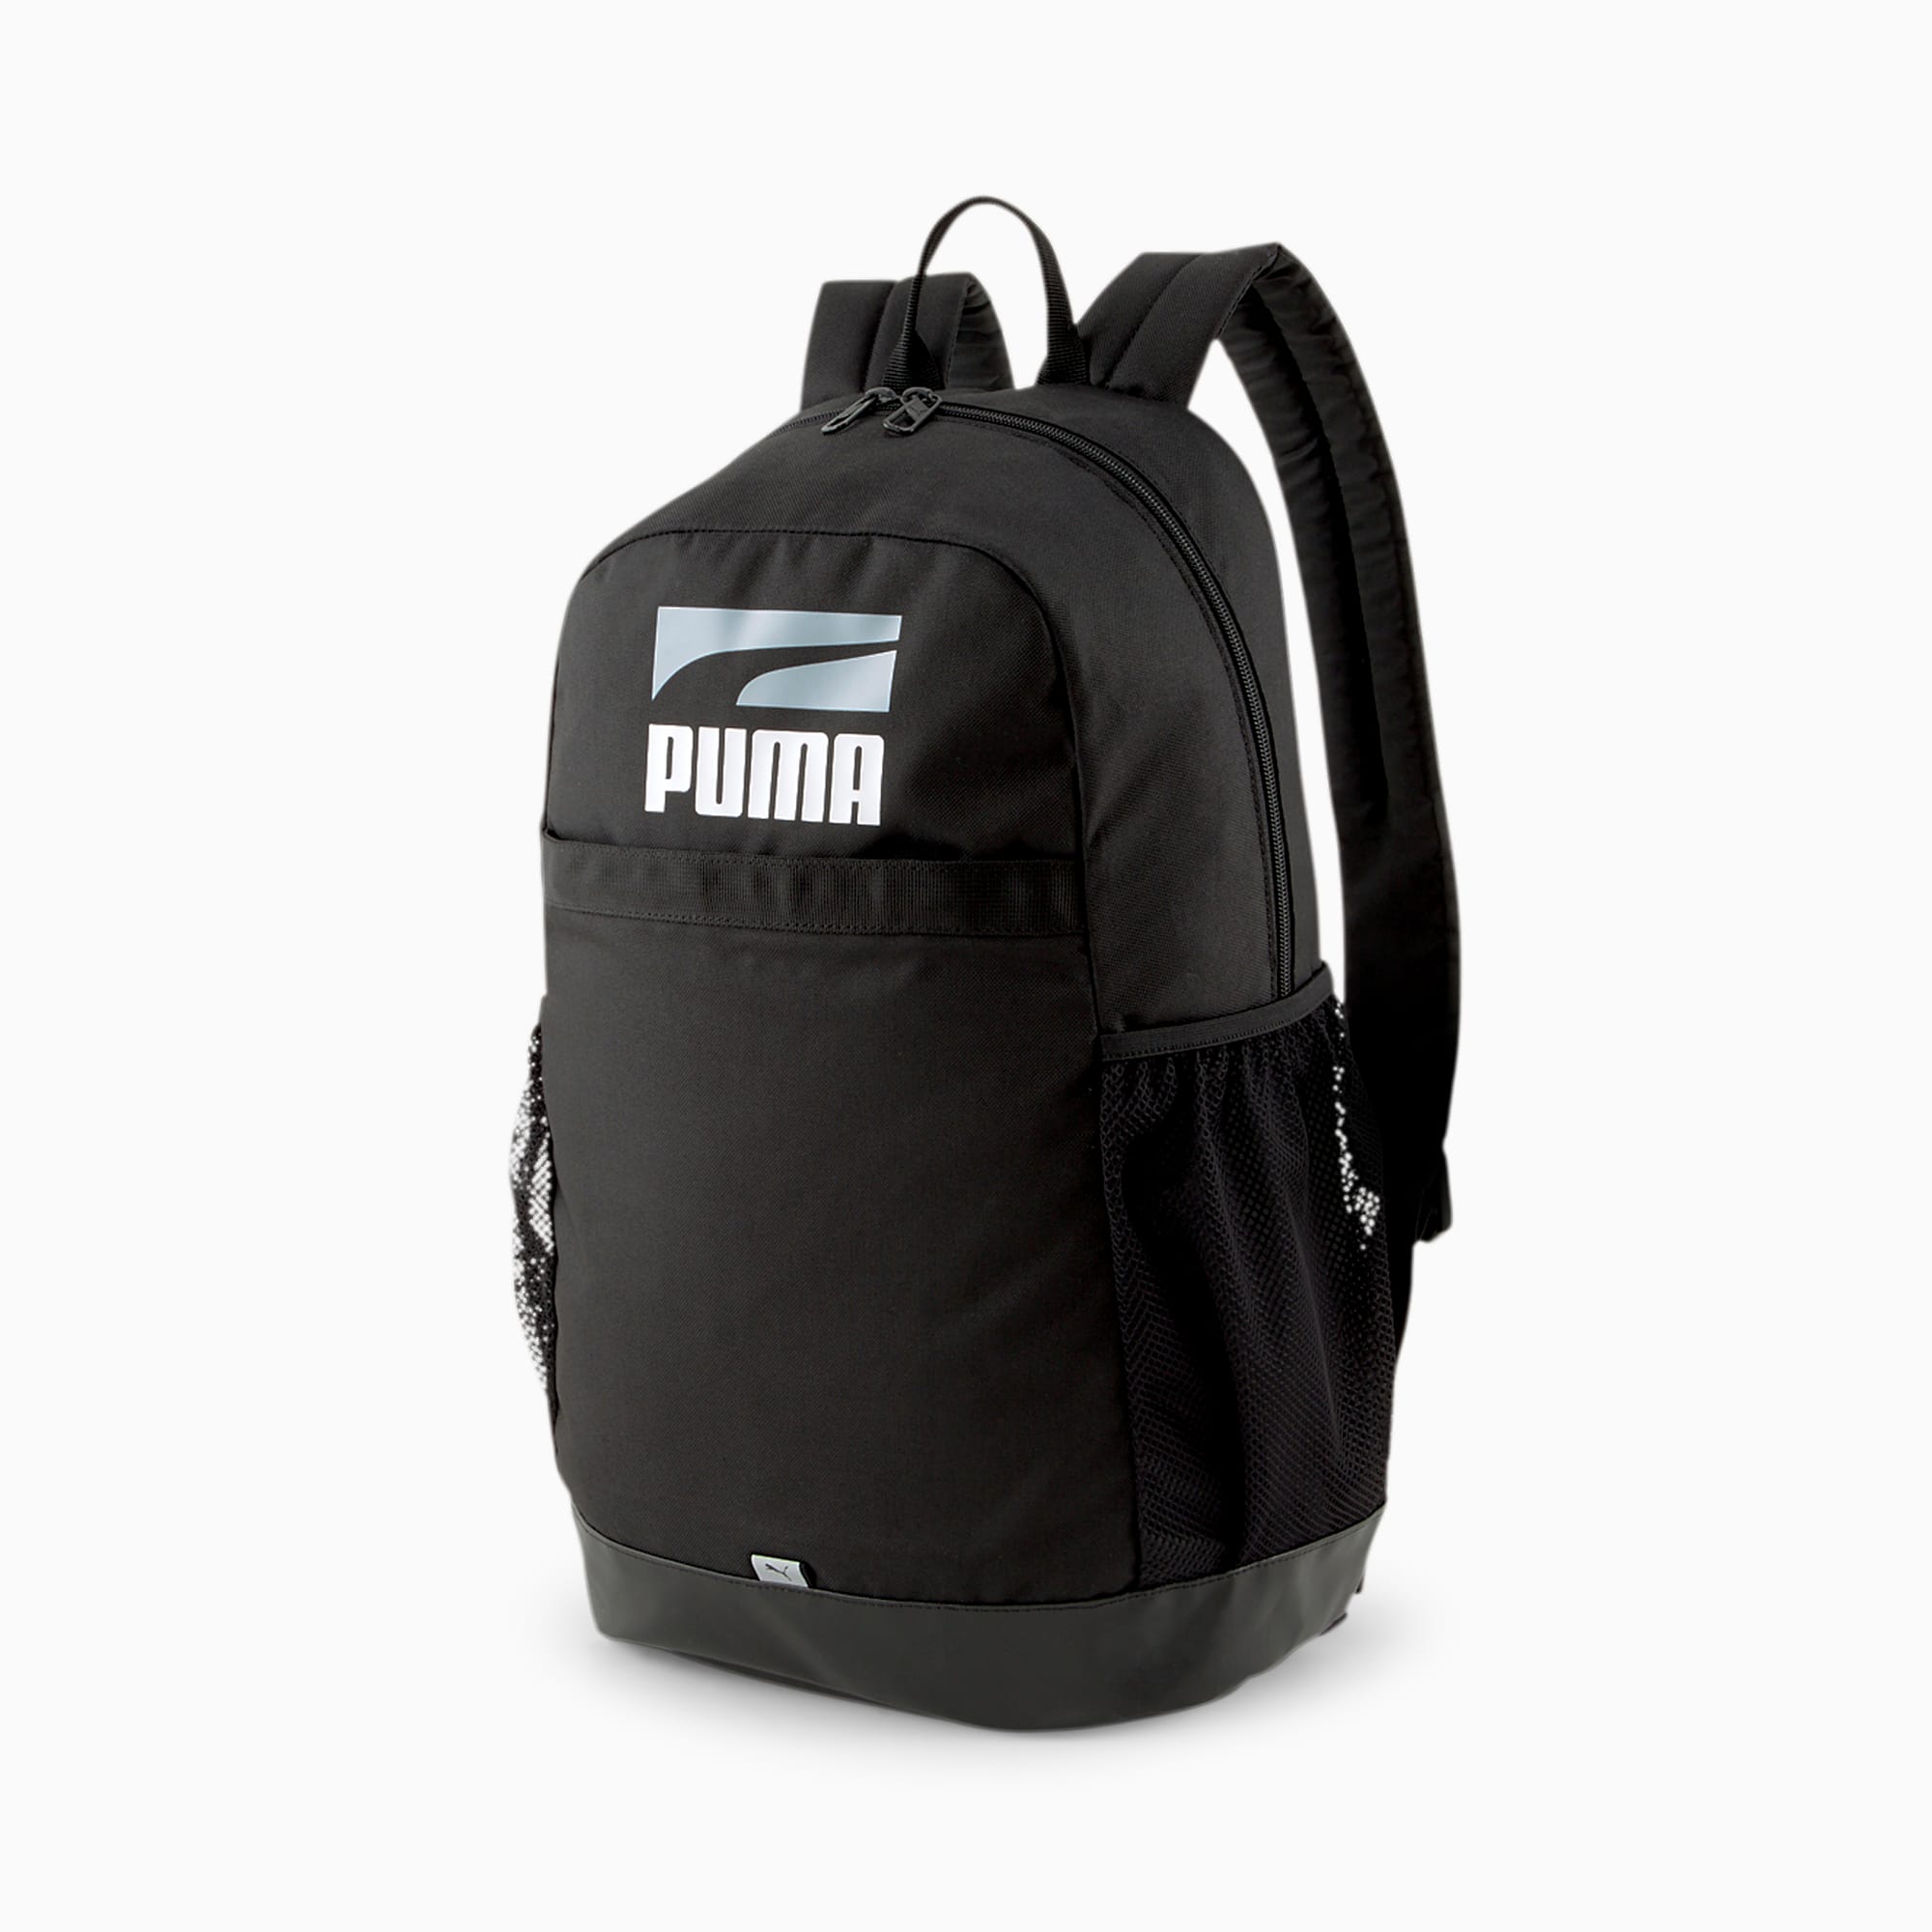 Plus II Backpack | PUMA